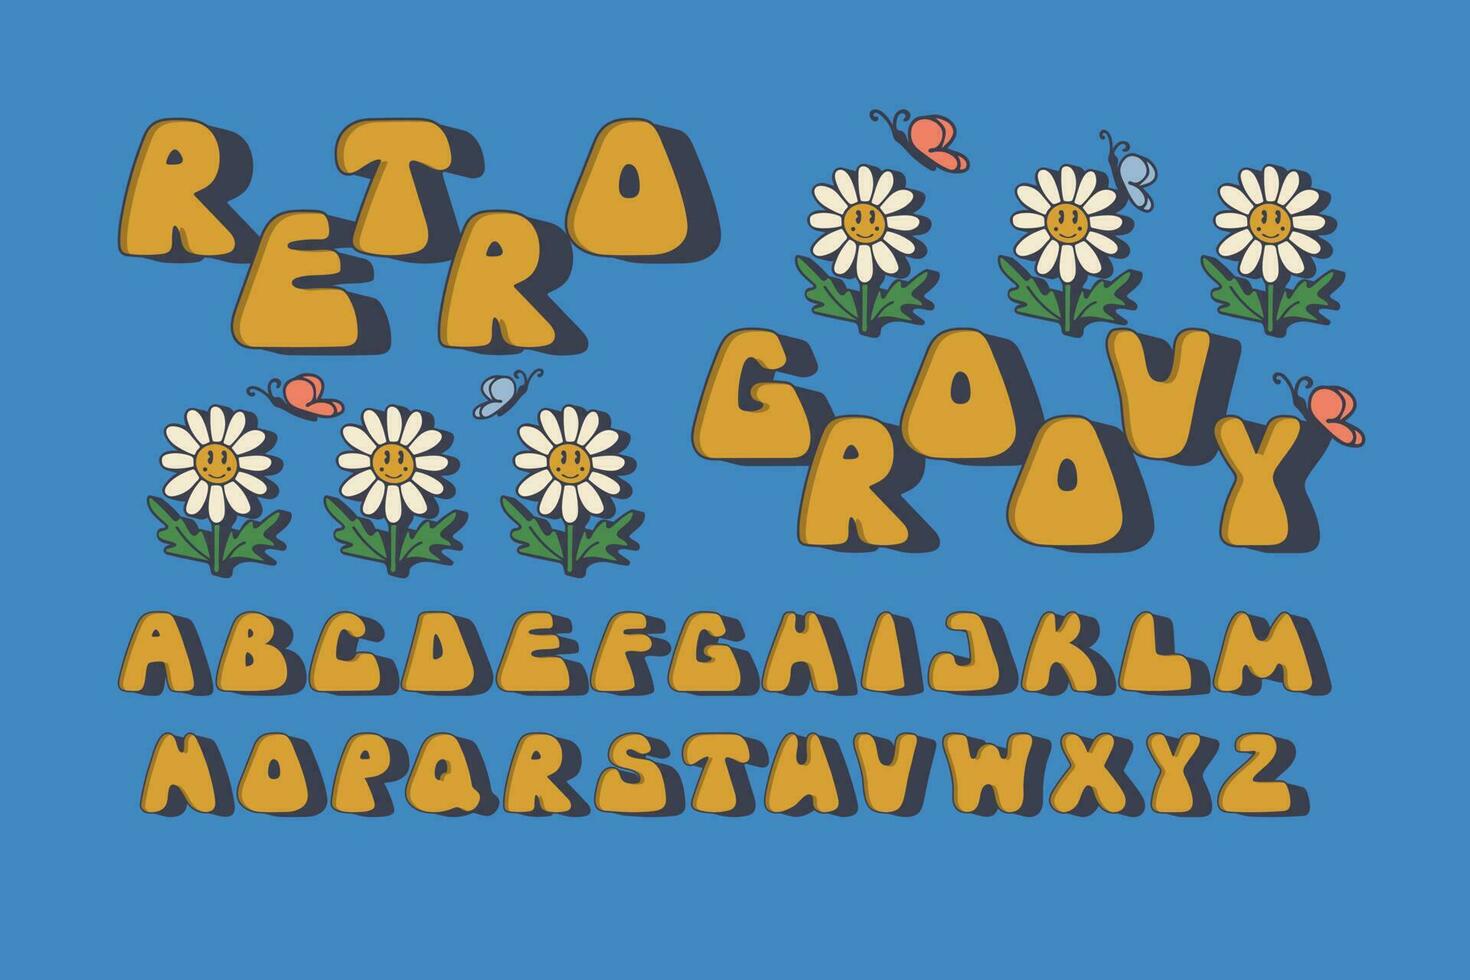 vetor retro groovy 3d alfabeto. estilizado isolado cartas com 3d plano efeito com margaridas e borboletas. perfeito para nostalgia letras projeto, tipográfico ilustração